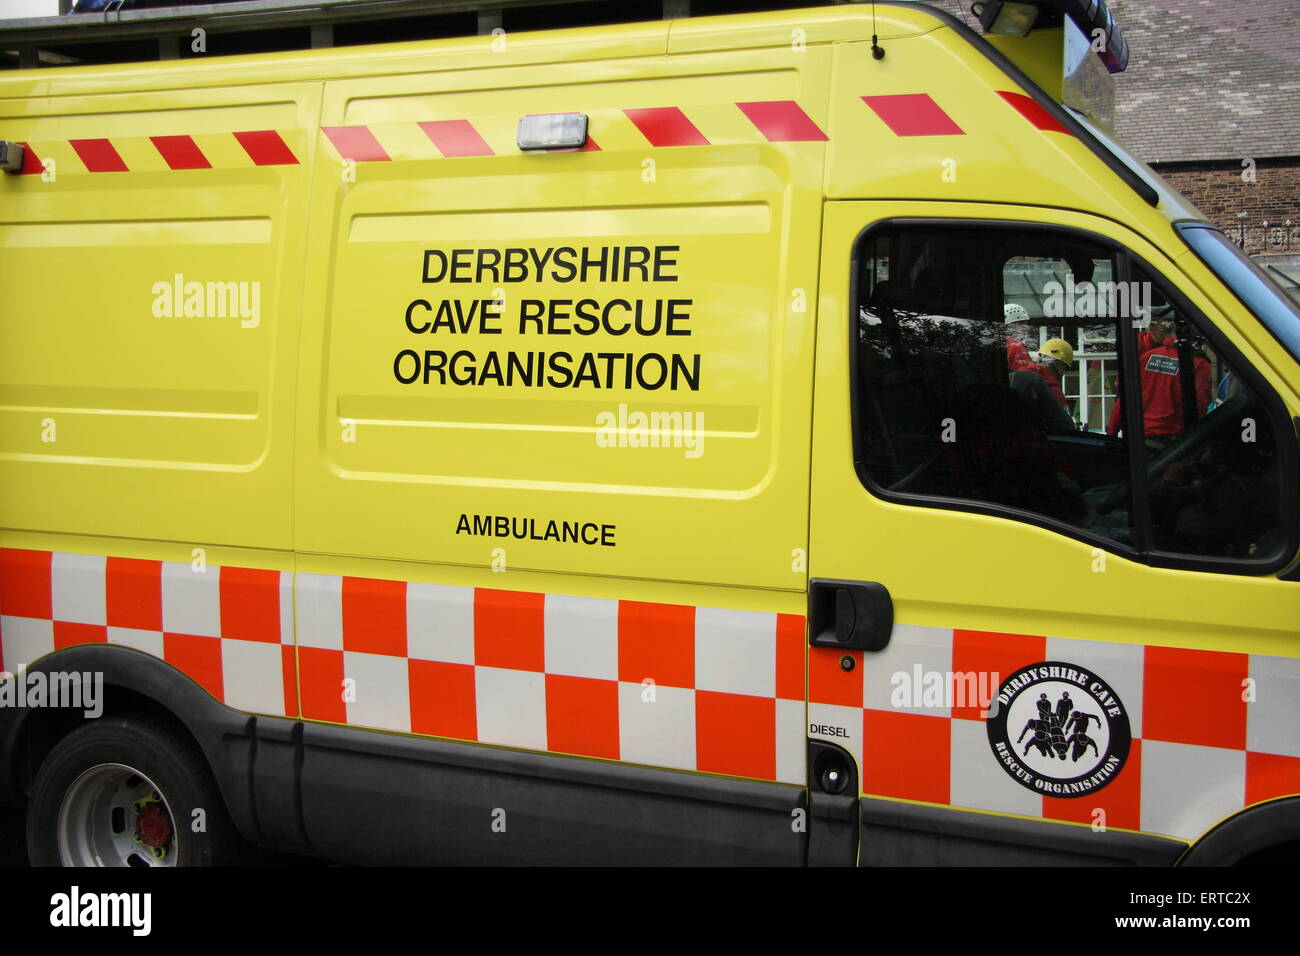 Derbyshire Cave rescue Organisation response vehicle, Derbyshire England UK Stock Photo